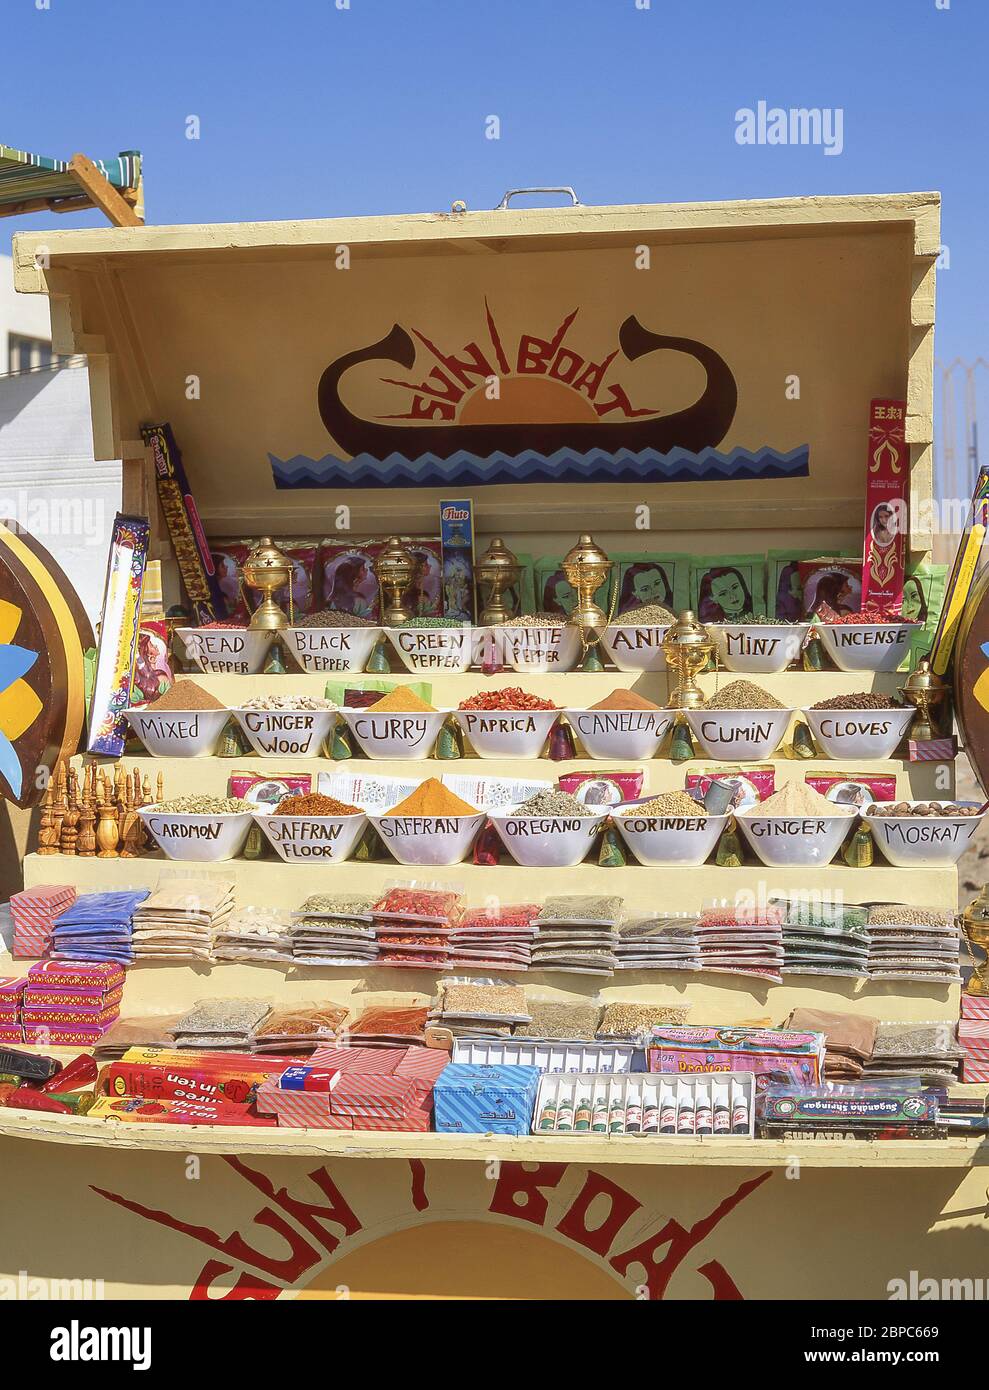 Kiosque aux épices Sun Boat, Assouan, gouvernorat d'Assouan, République d'Égypte Banque D'Images